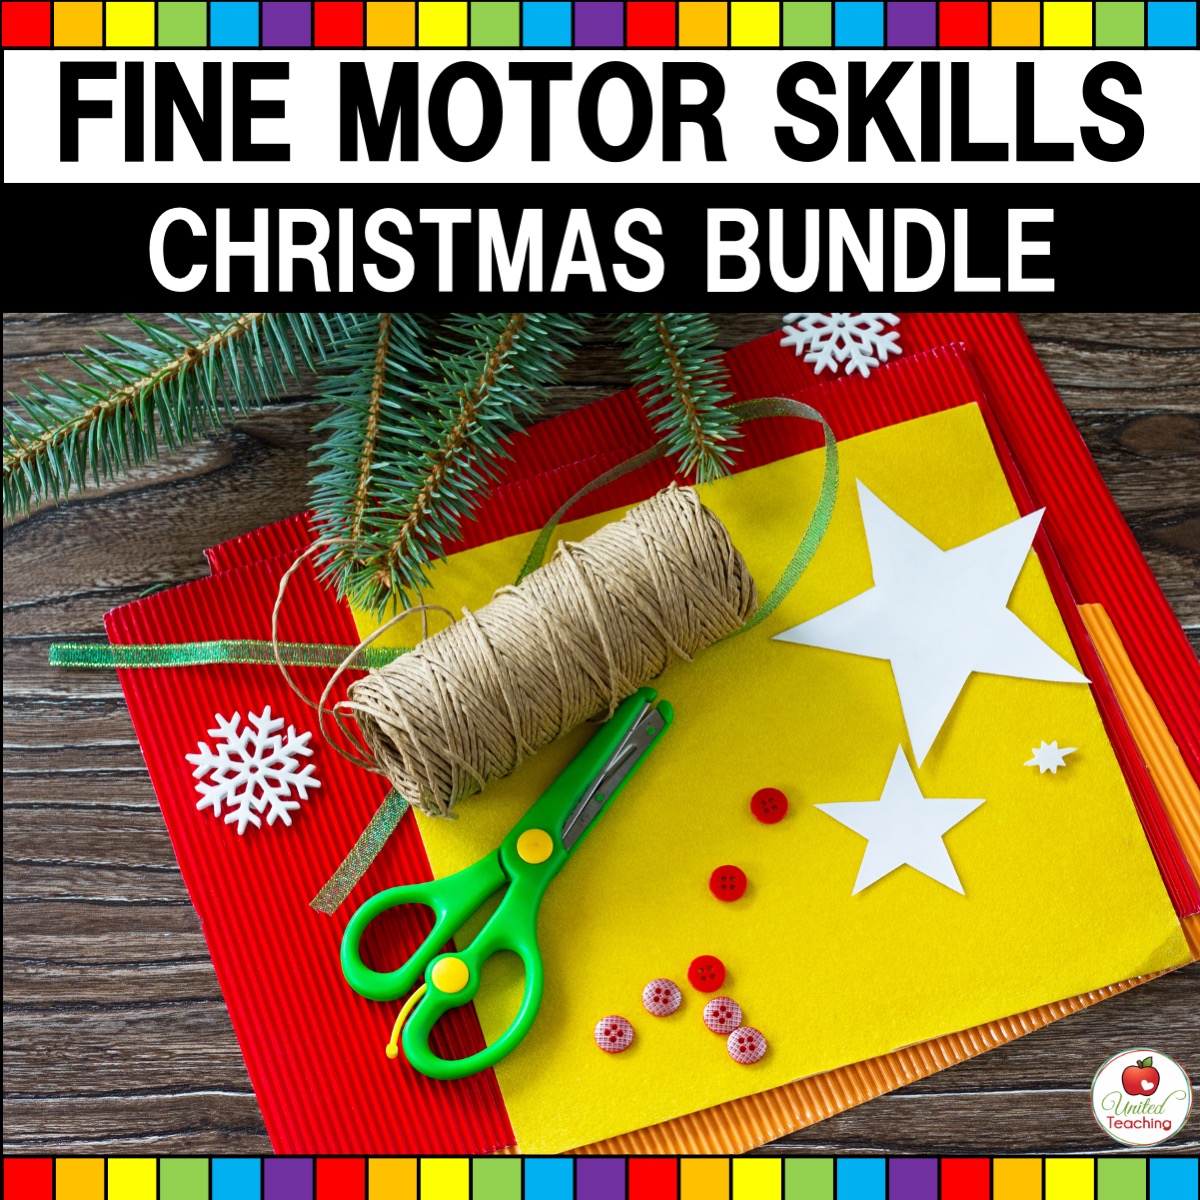 Fine Motor Christmas Activities for Preschool